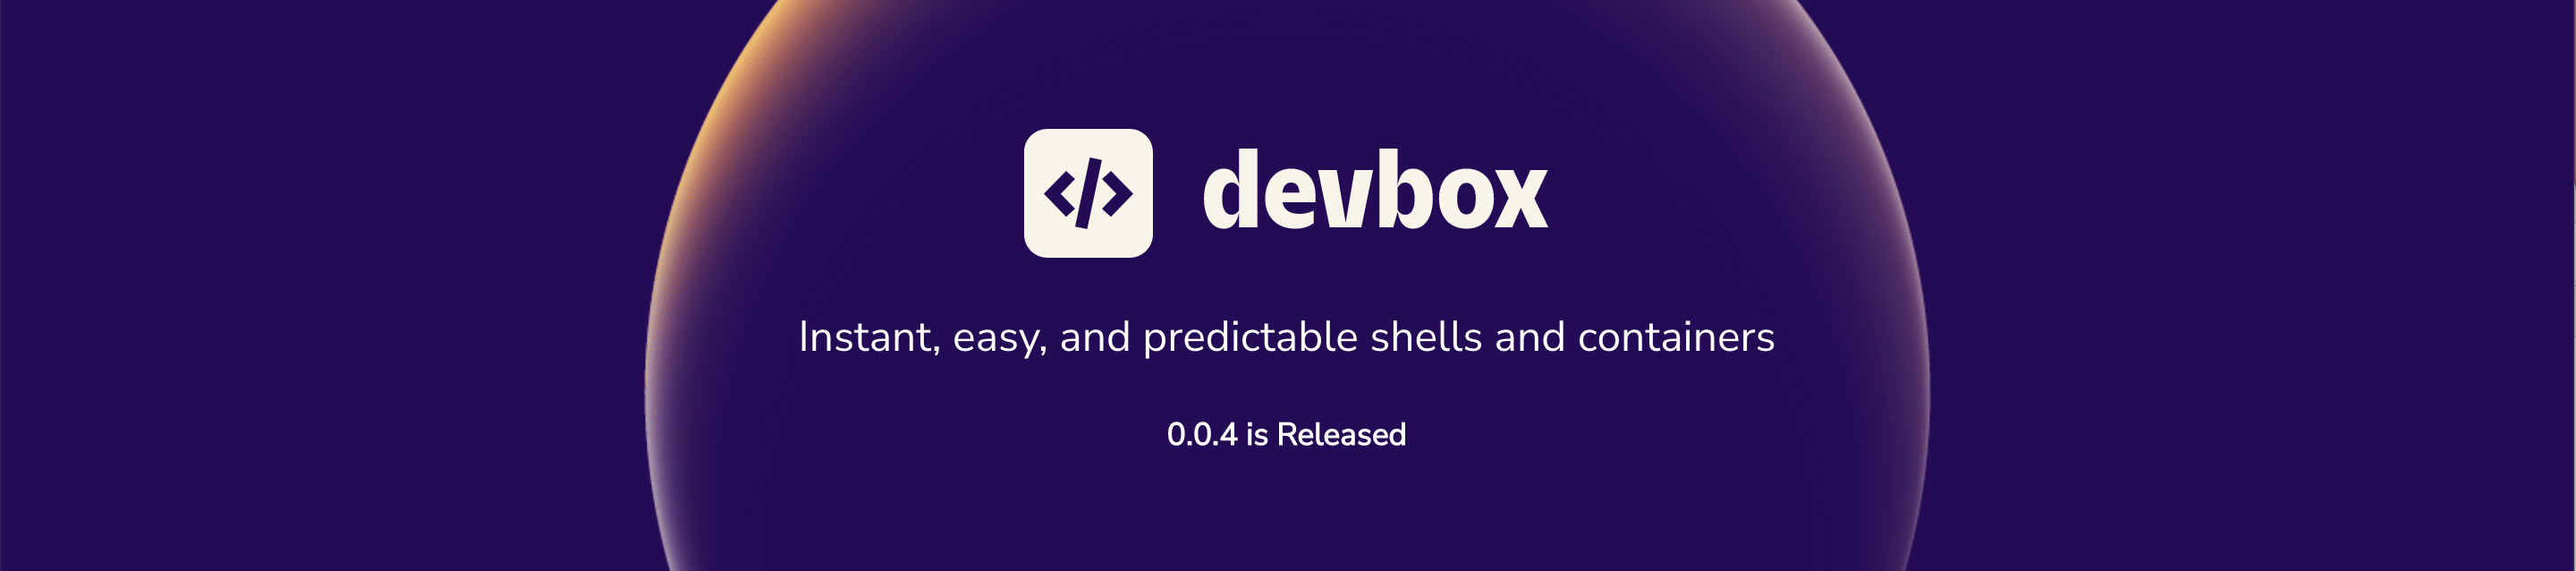 Devbox 0.0.4 is released!